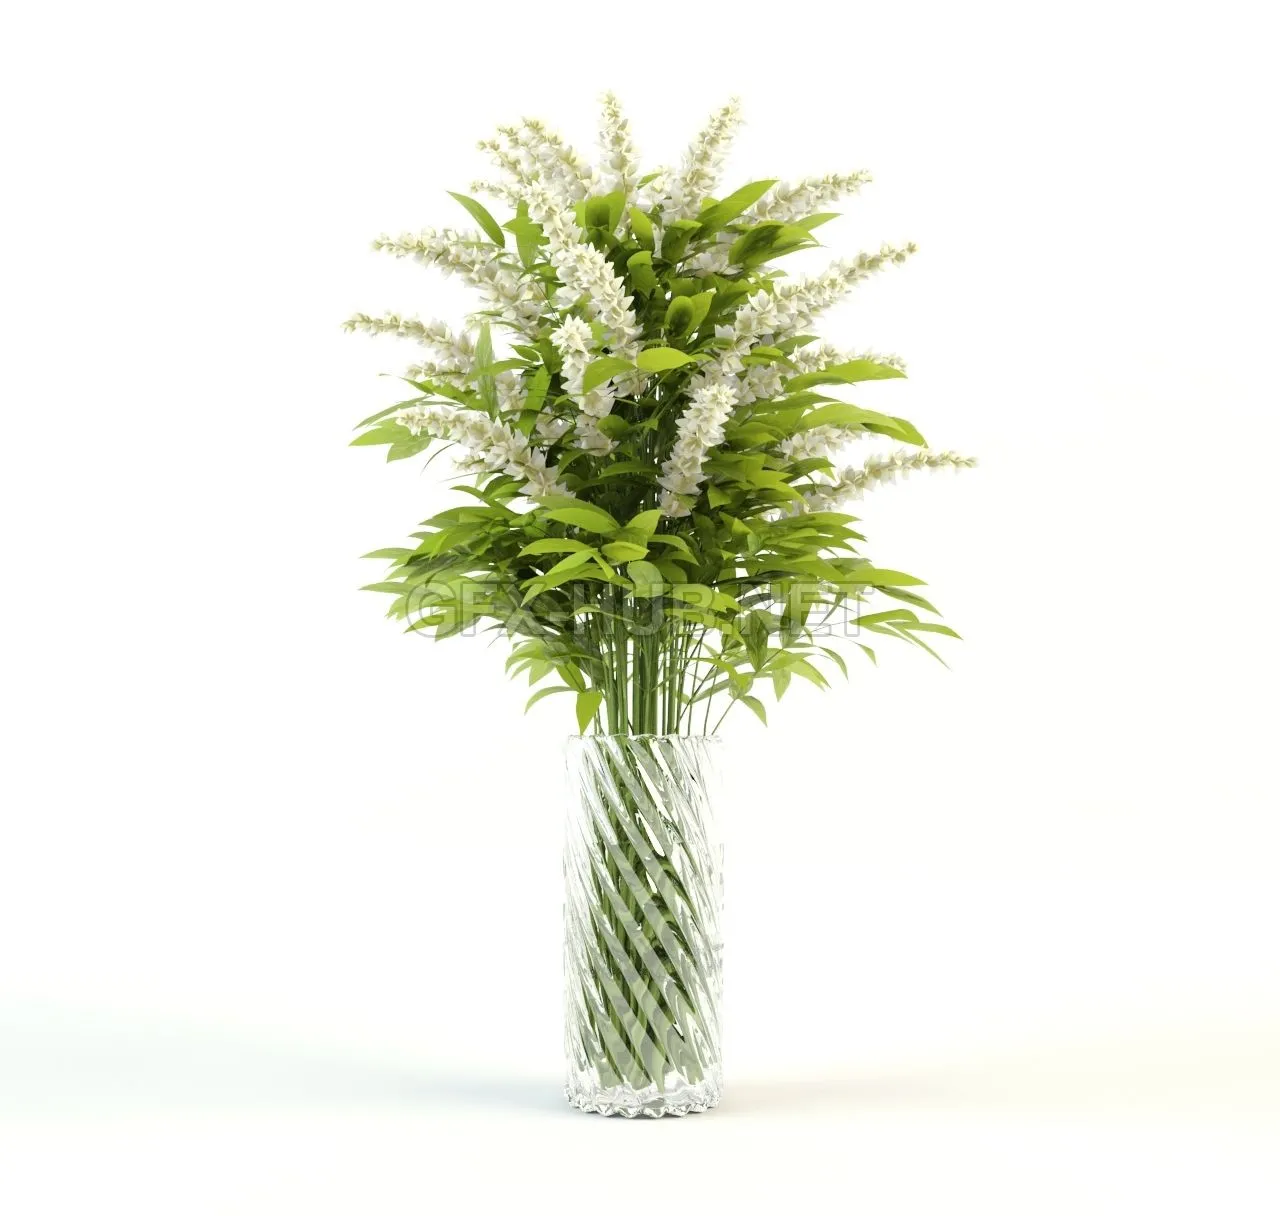 FURNITURE 3D MODELS – Flower in a vase